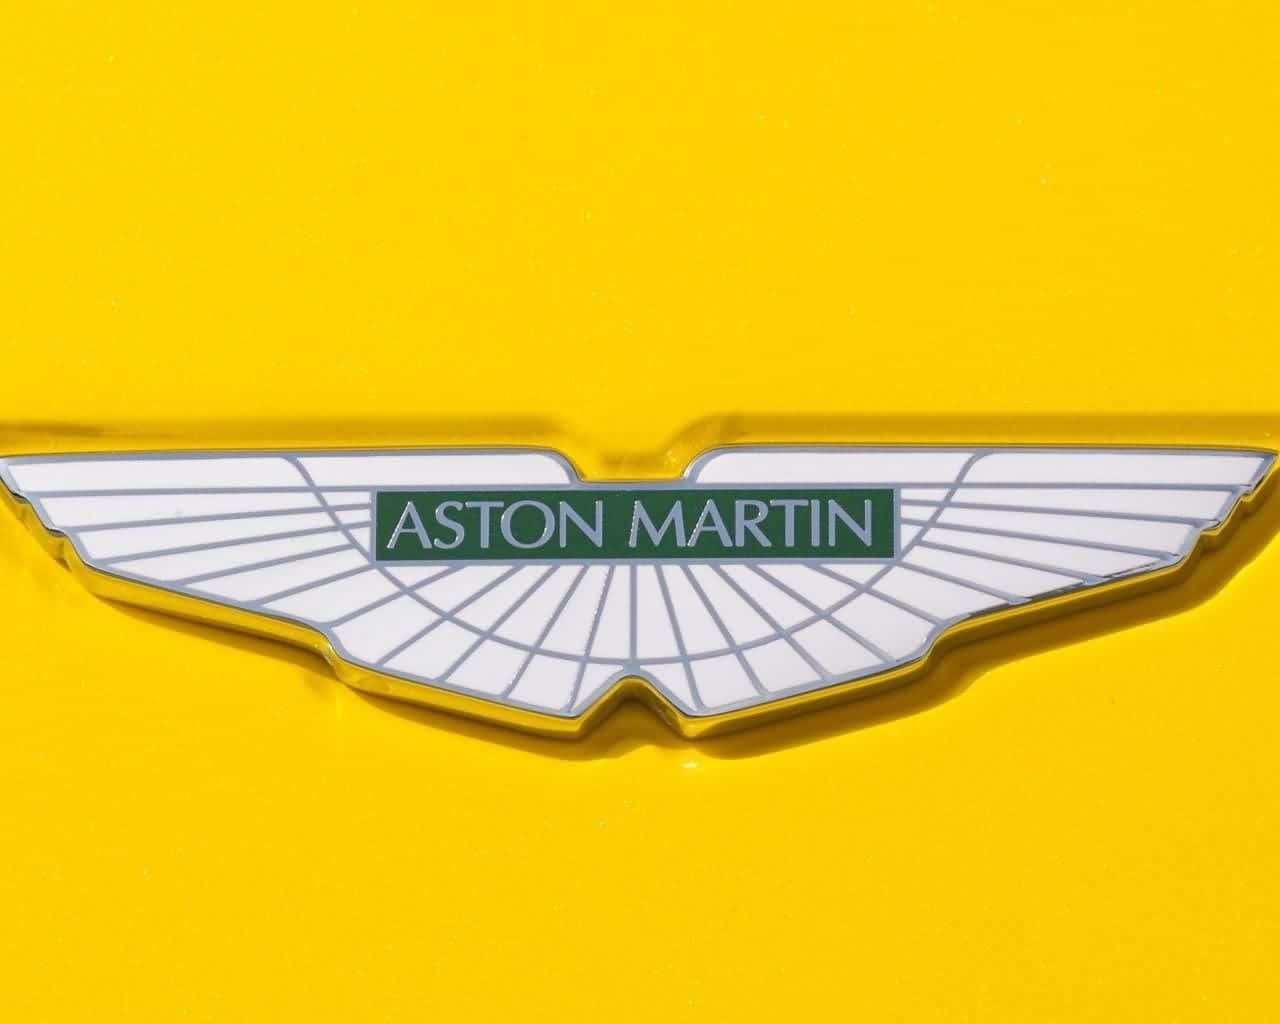 Astonmartin-abzeichen Auf Einem Gelben Auto.